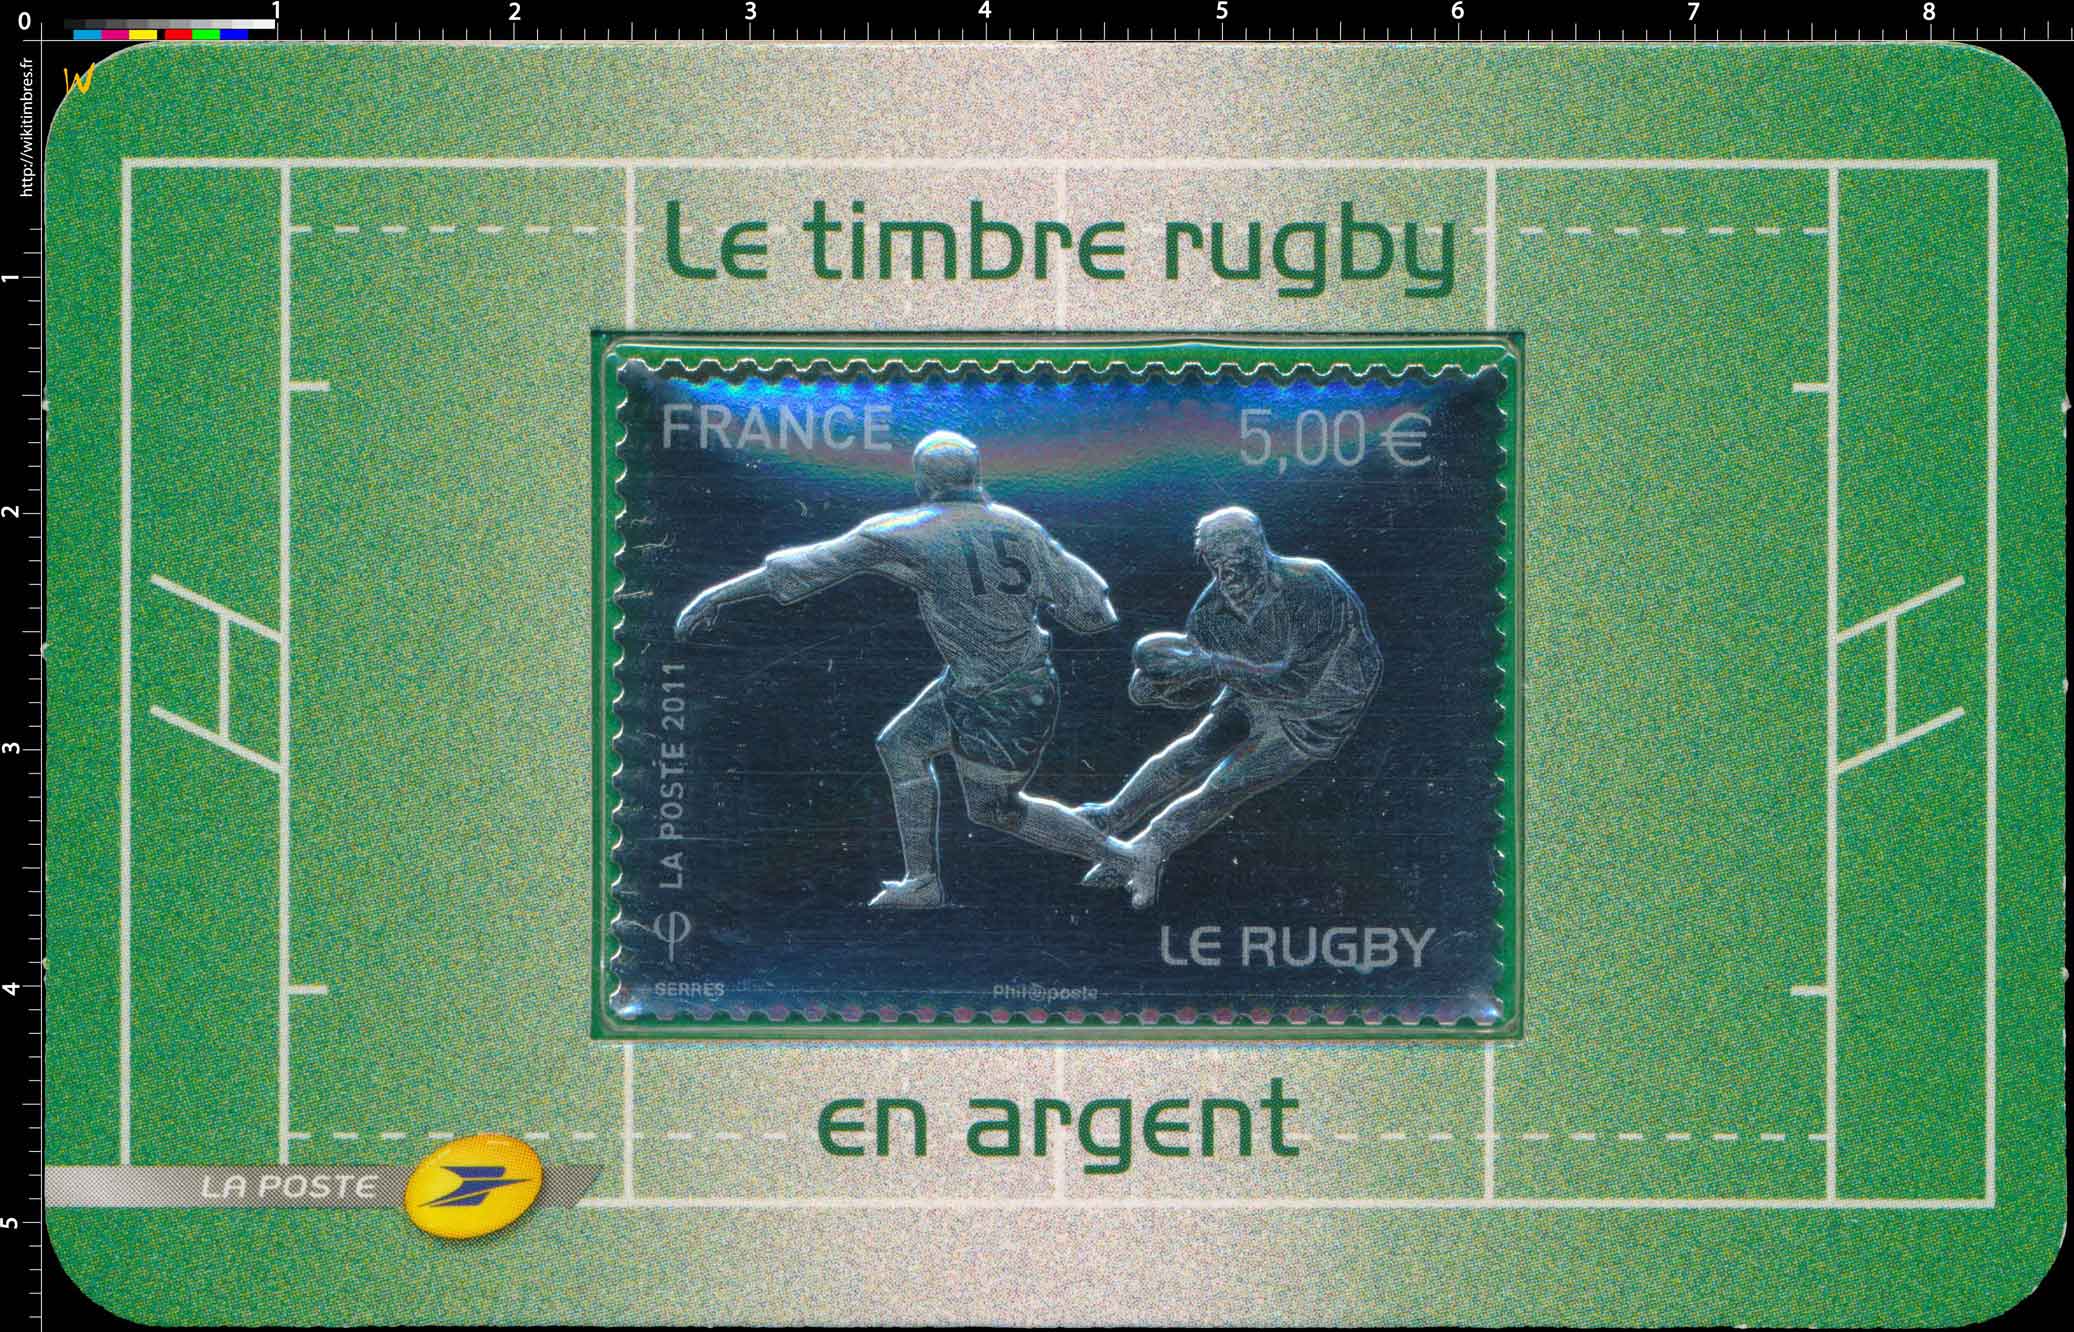 2011 Le Timbre rugby en argent